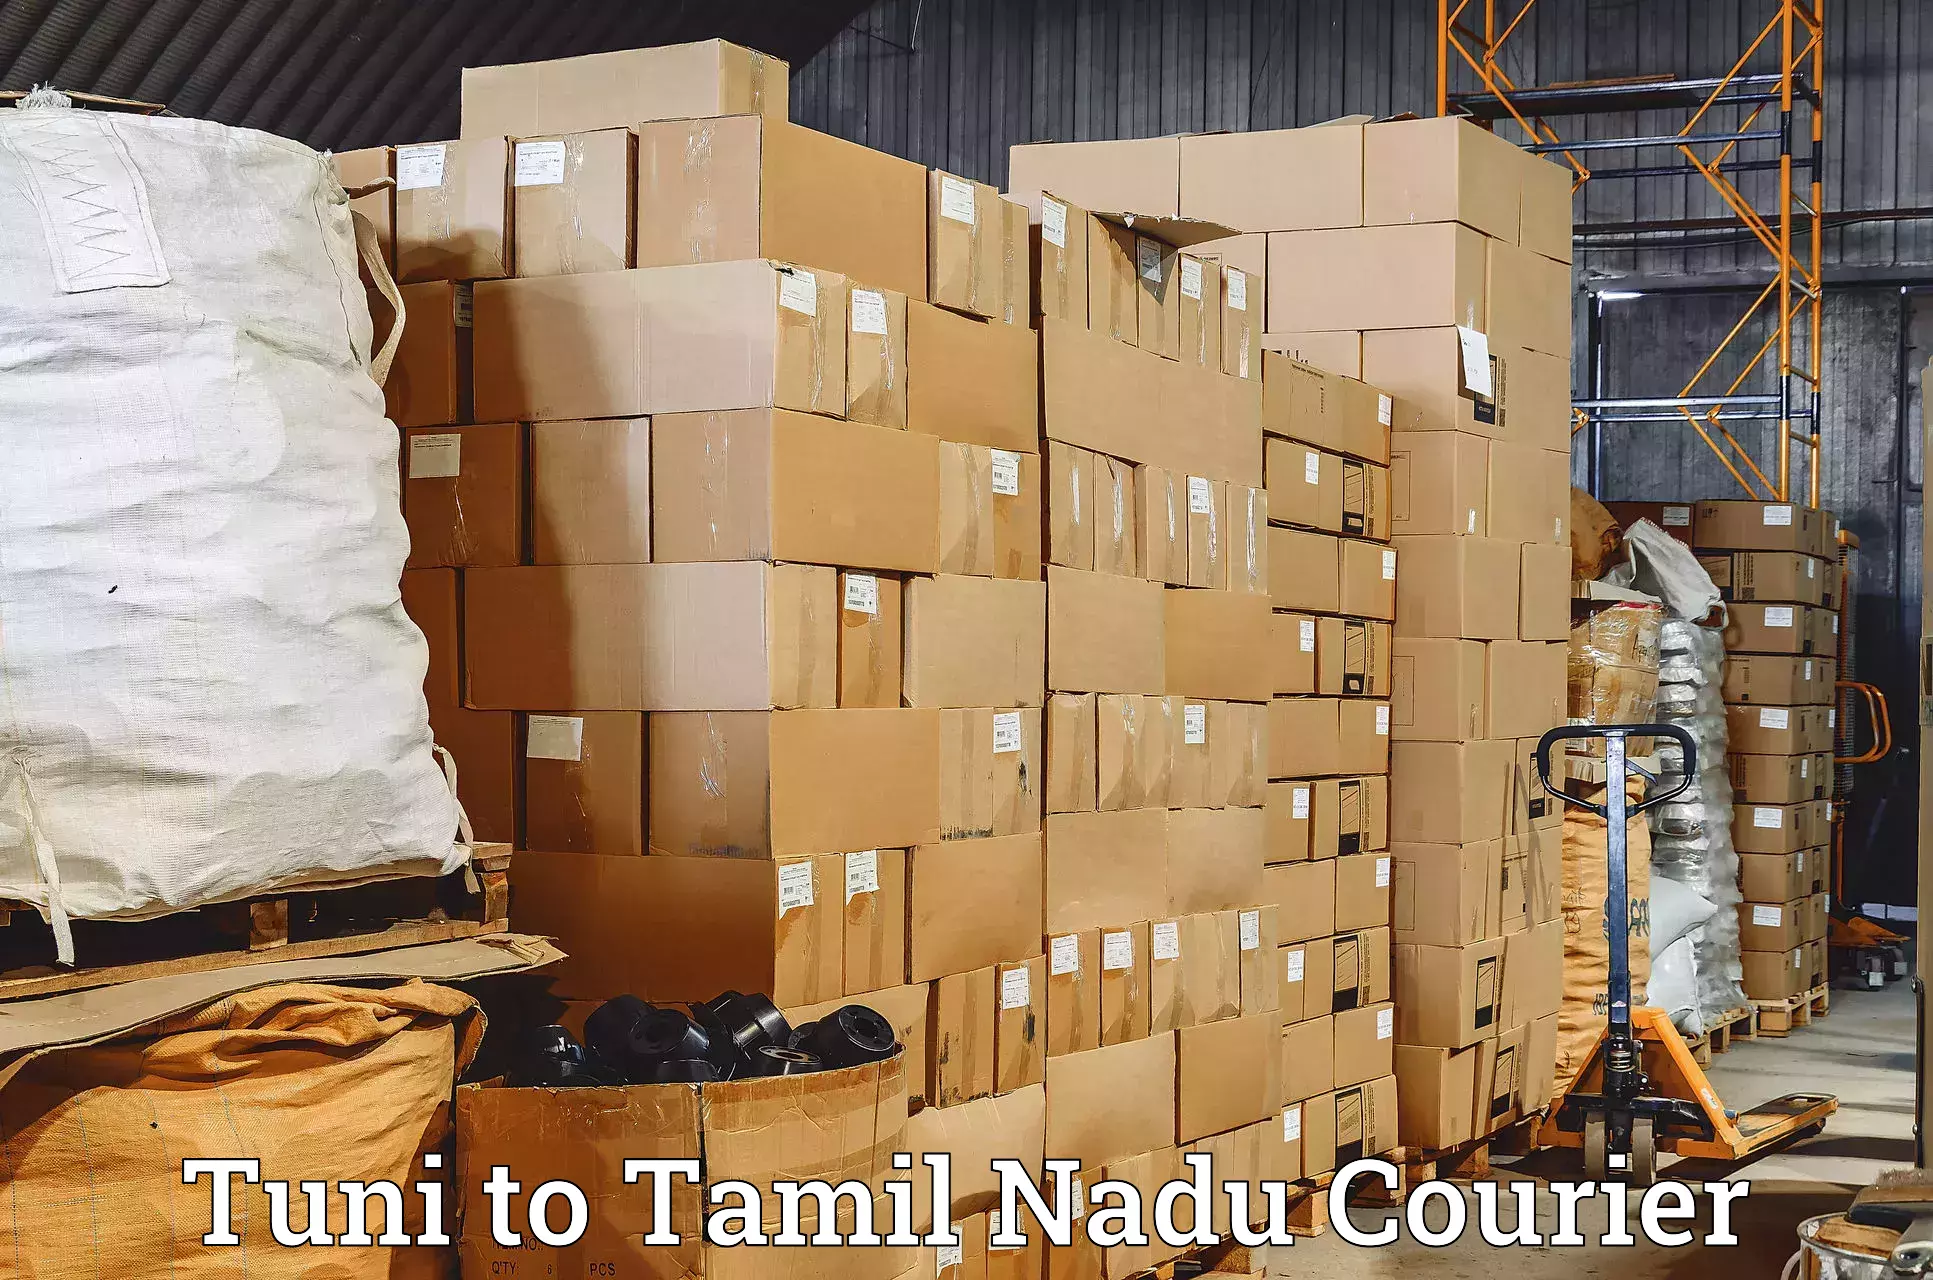 High-performance logistics Tuni to Tamil Nadu